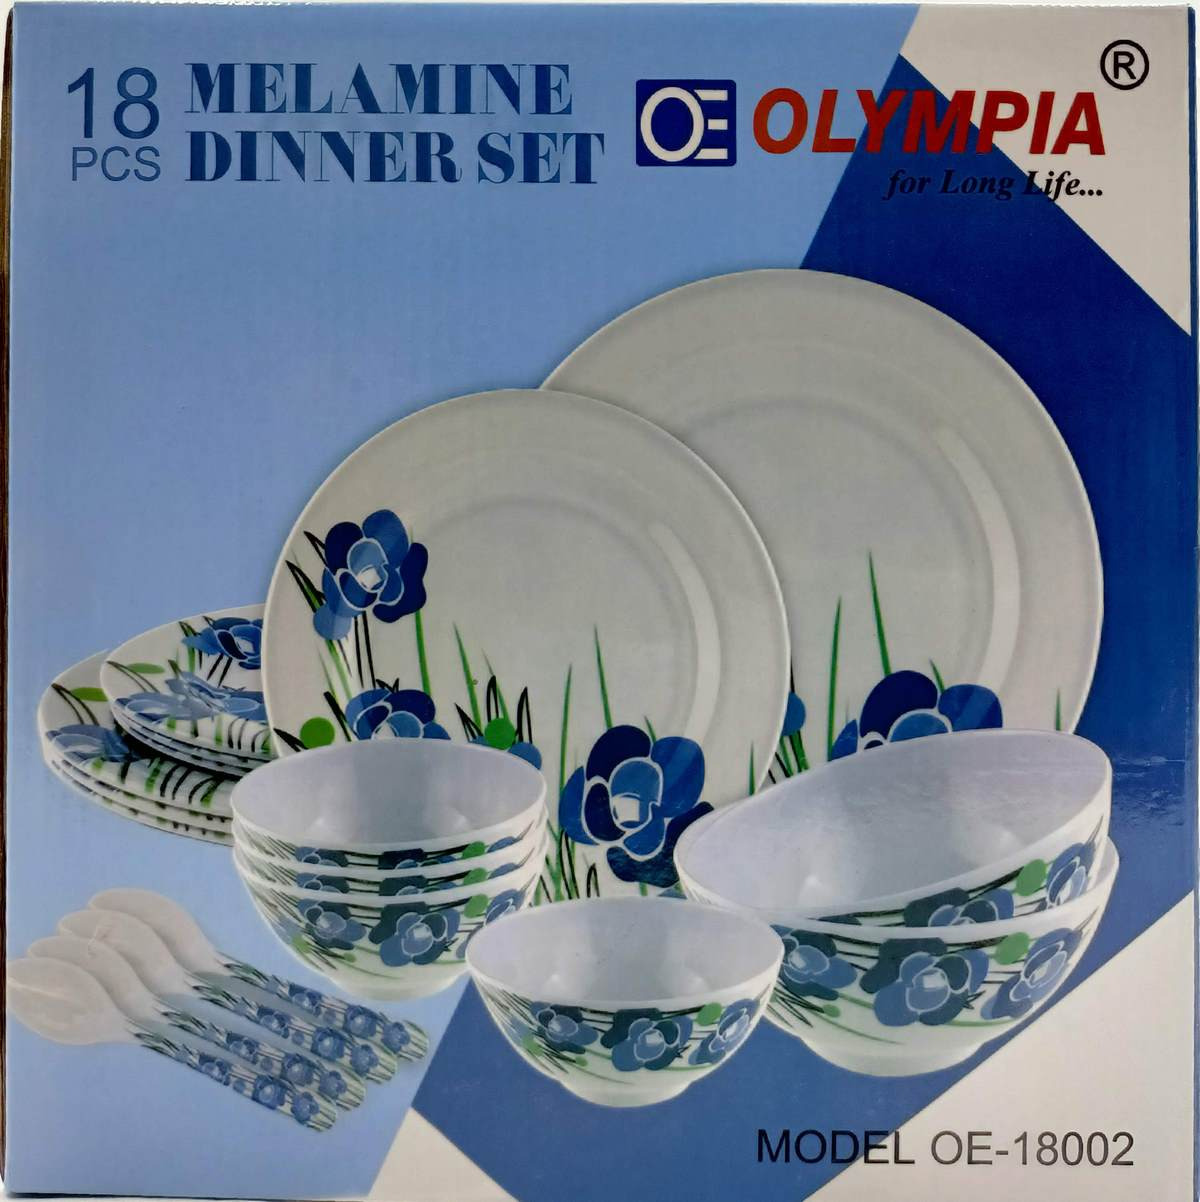 OLYMPIA 18 PCS Melamine Dinner Set OE-18002